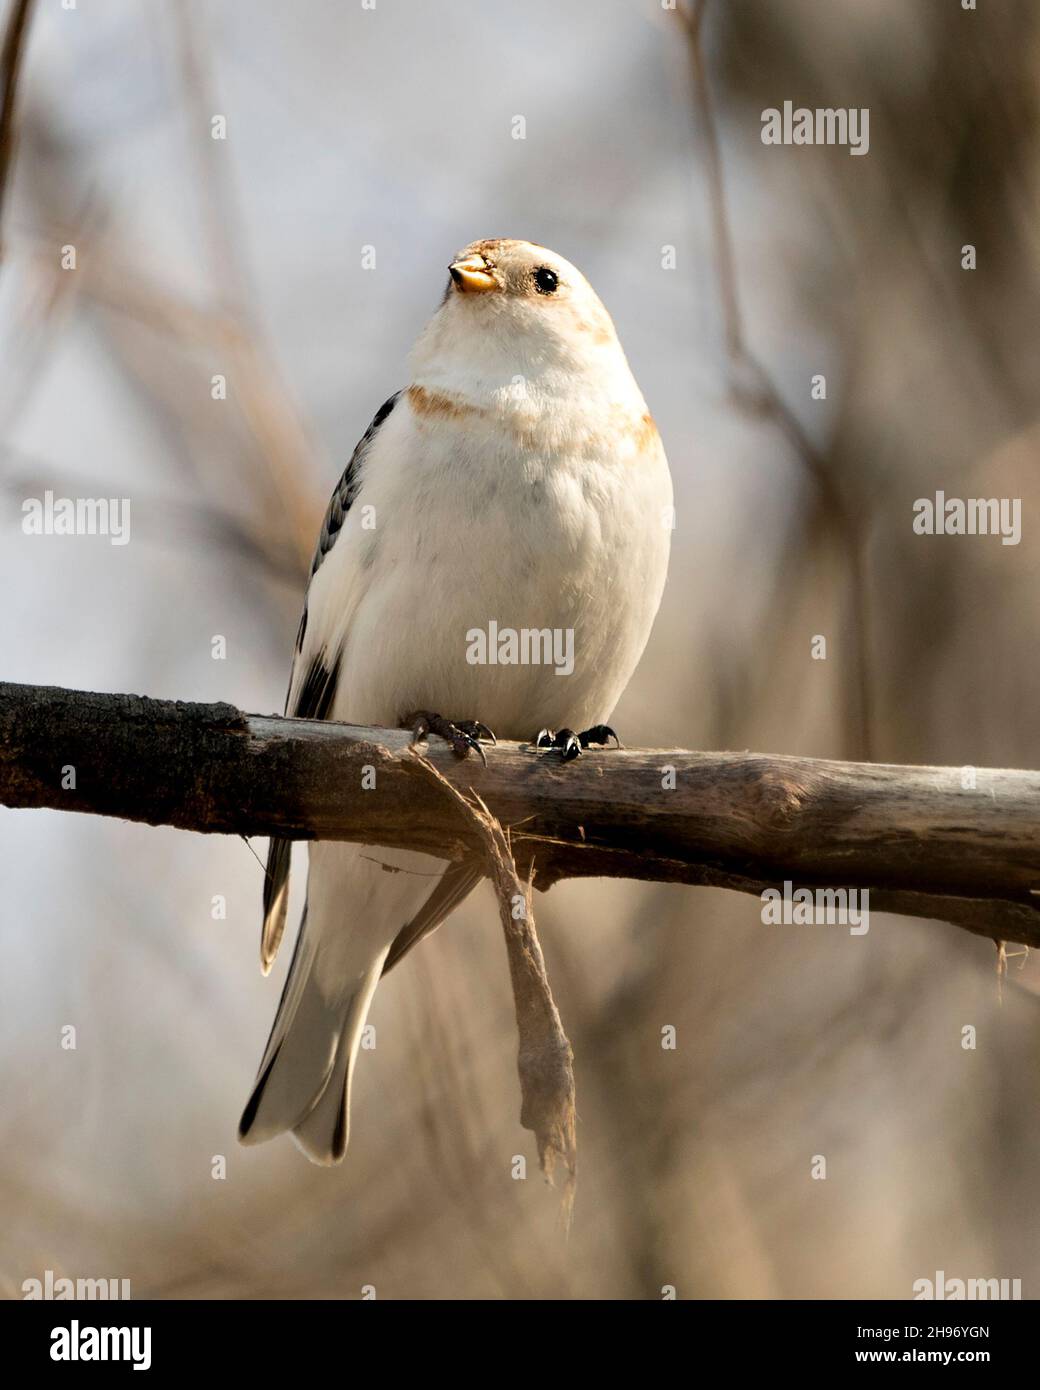 Nahaufnahme eines schneeverdeckten Vogels, der auf einem Baumzweig mit einem unscharfen Hintergrund in seiner Umgebung und seinem Lebensraum thront. Bild. Bild. Hochformat. Stockfoto